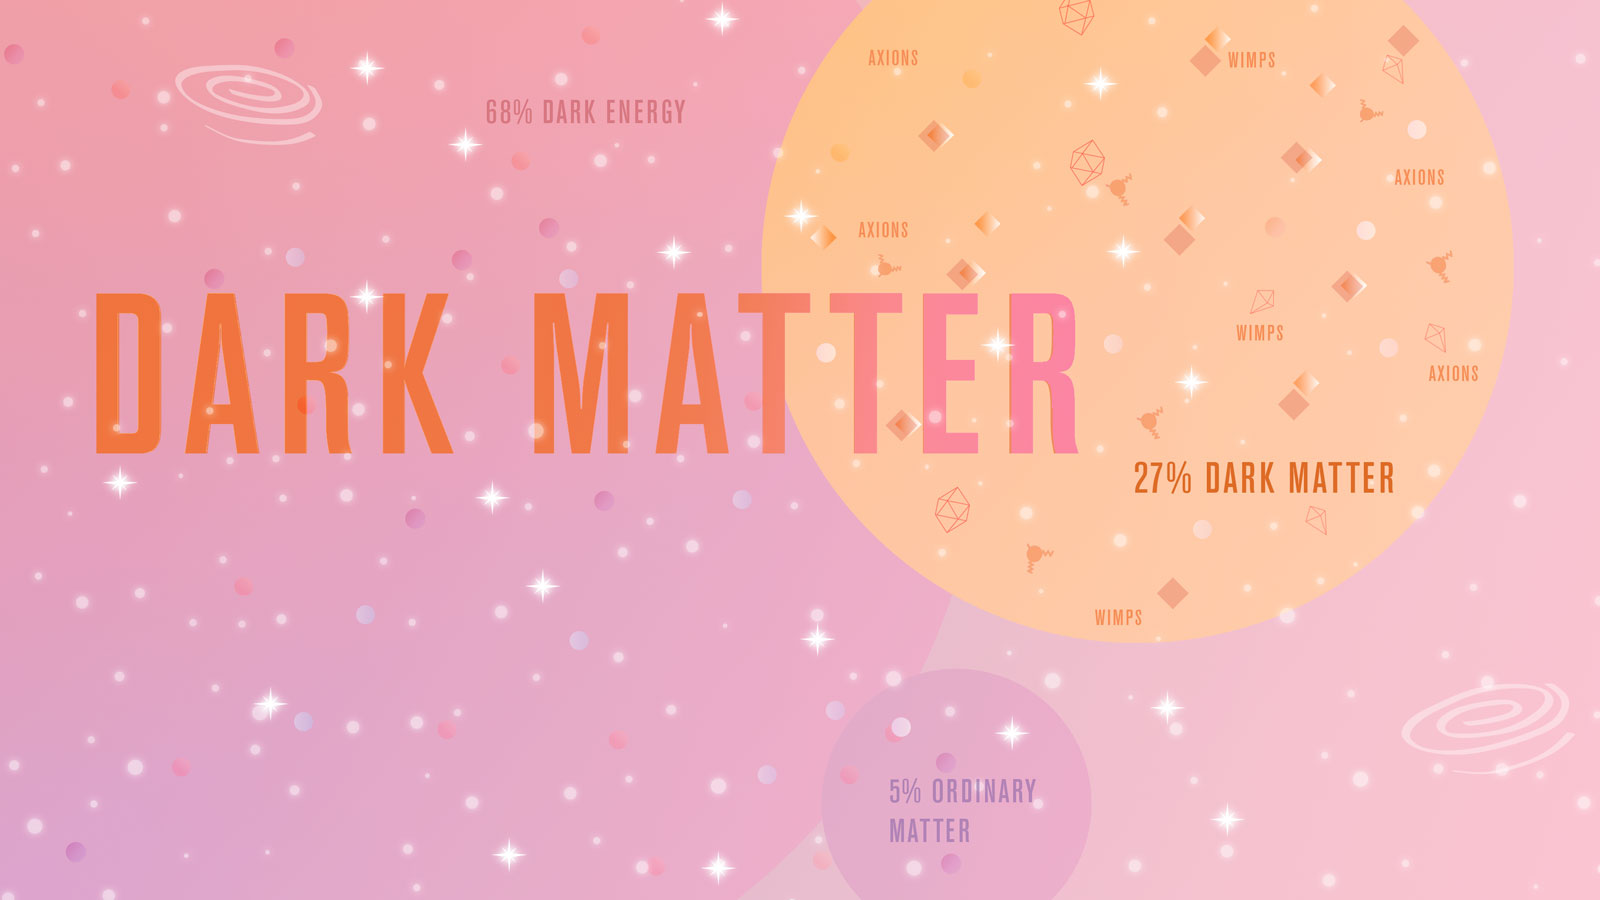 Illustration of "Dark Matter"